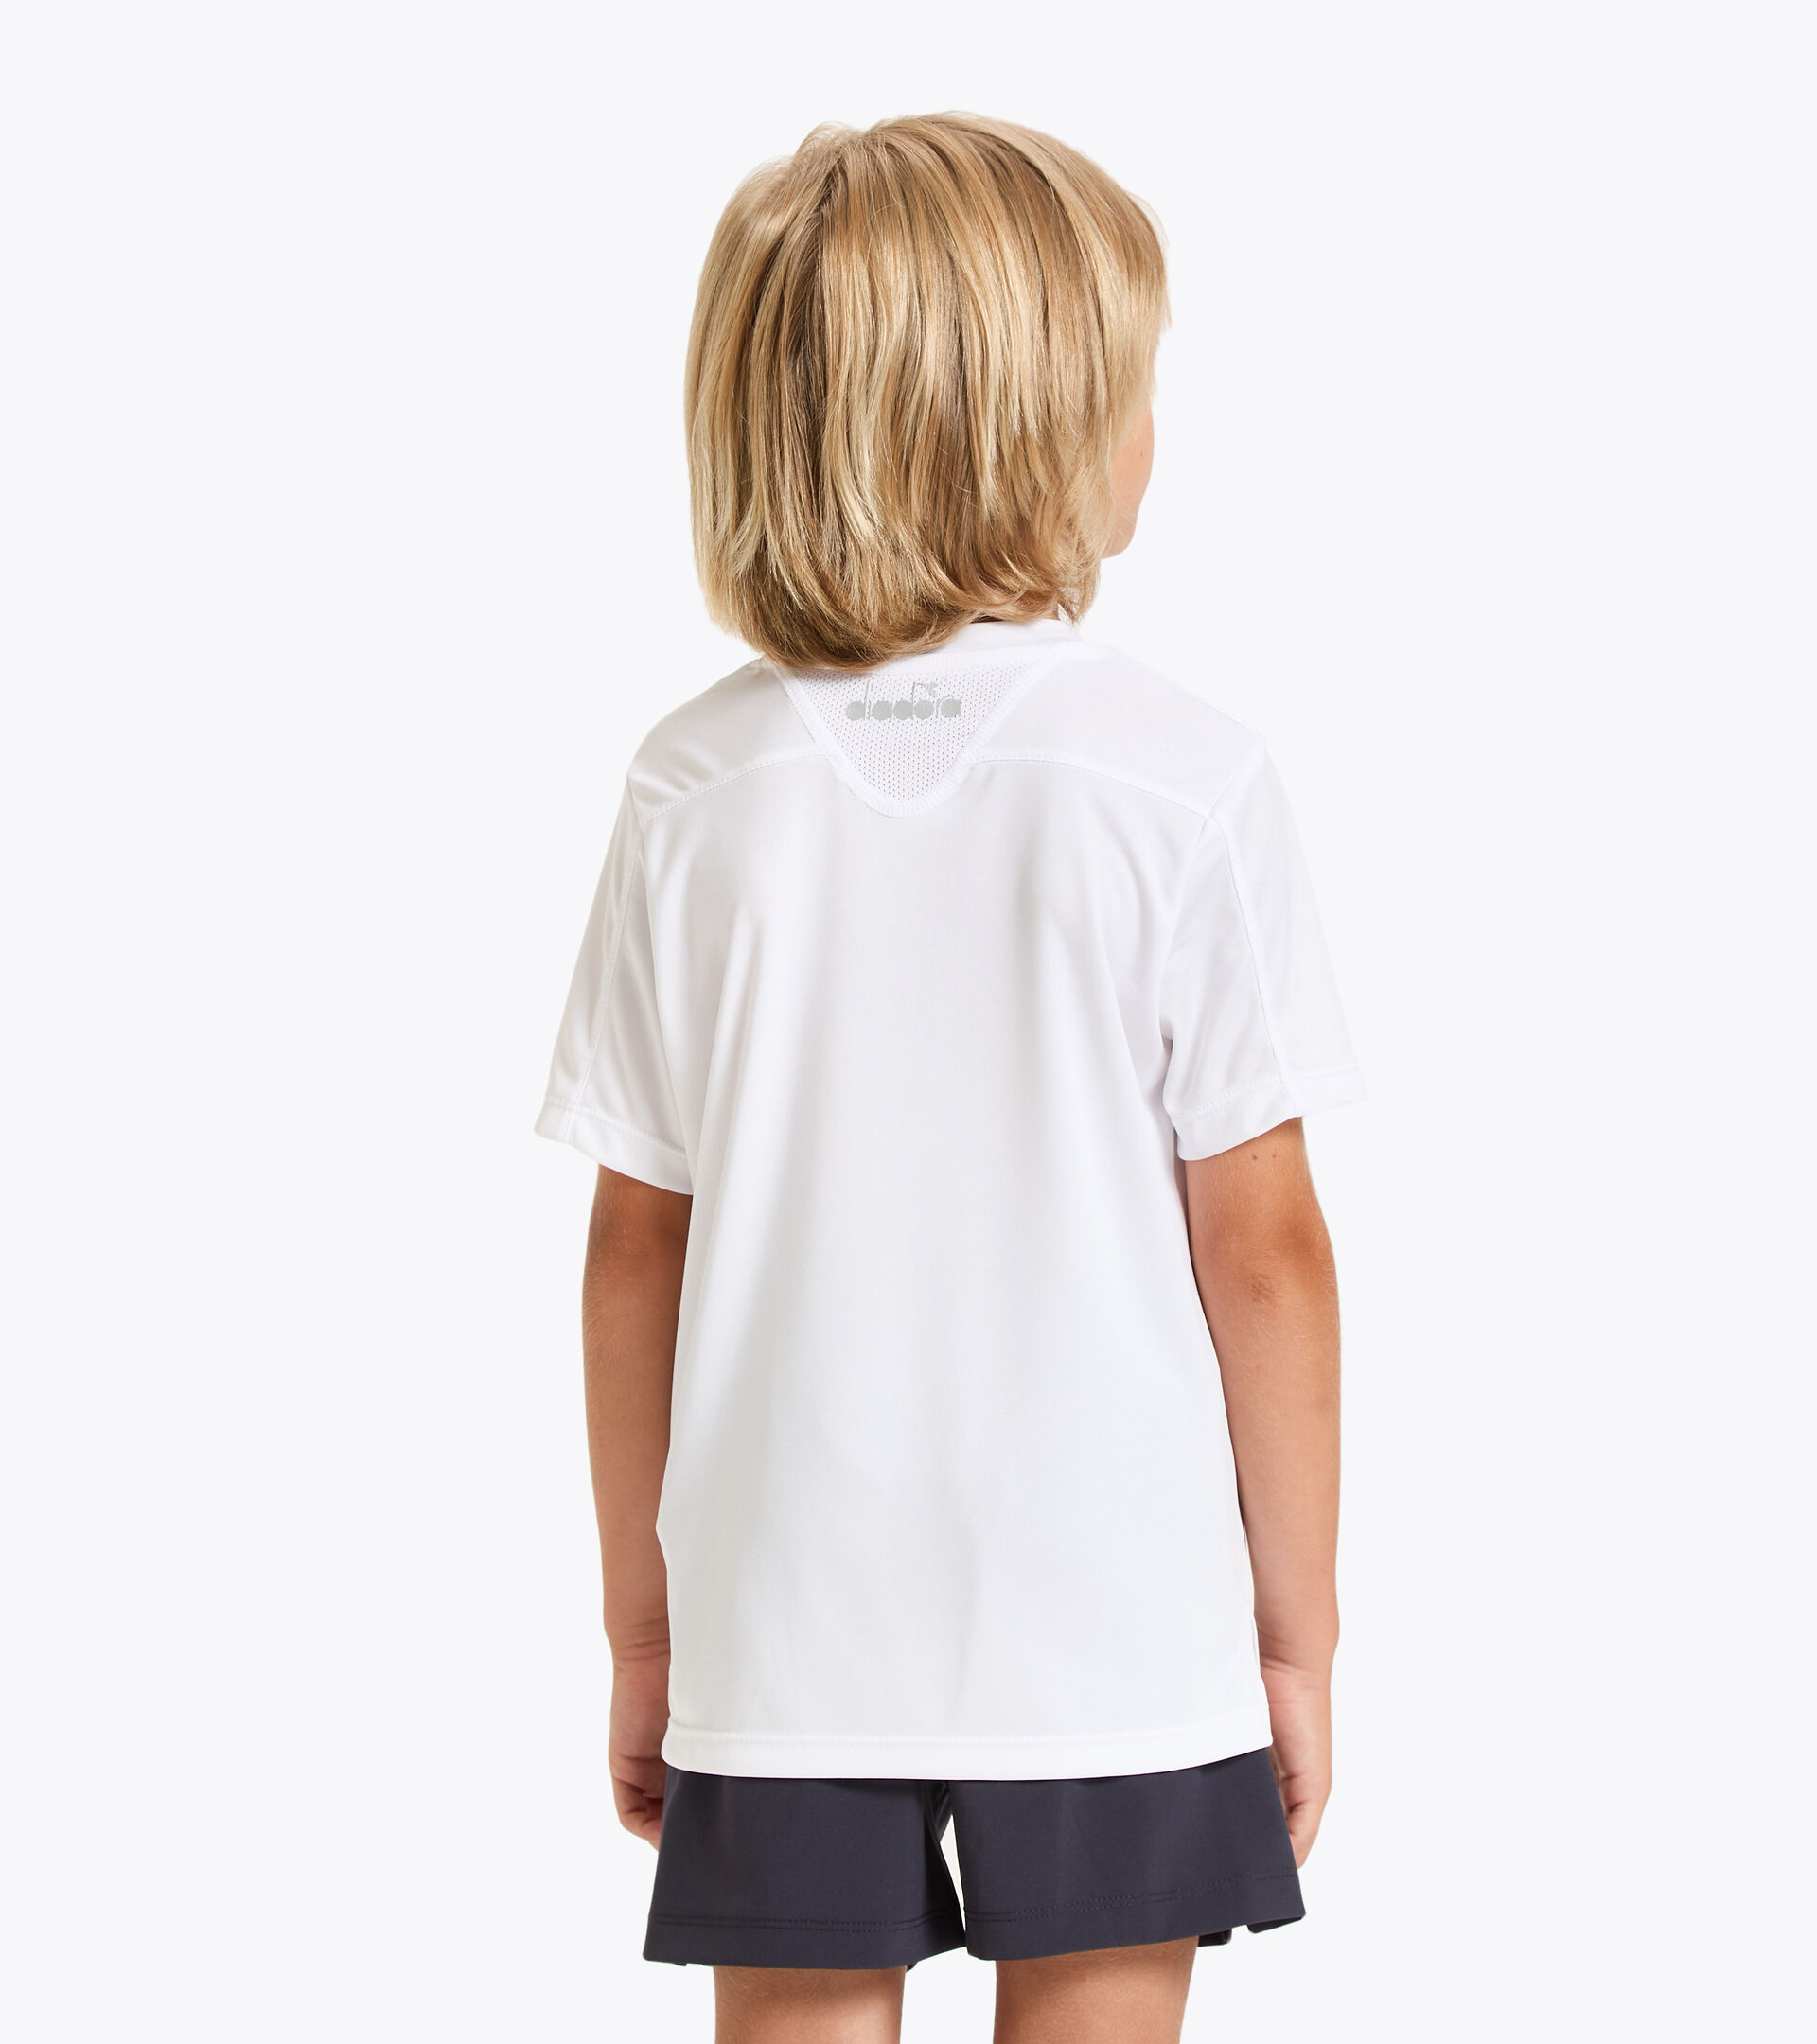 Tennis T-shirt - Junior J. T-SHIRT TEAM OPTICAL WHITE - Diadora